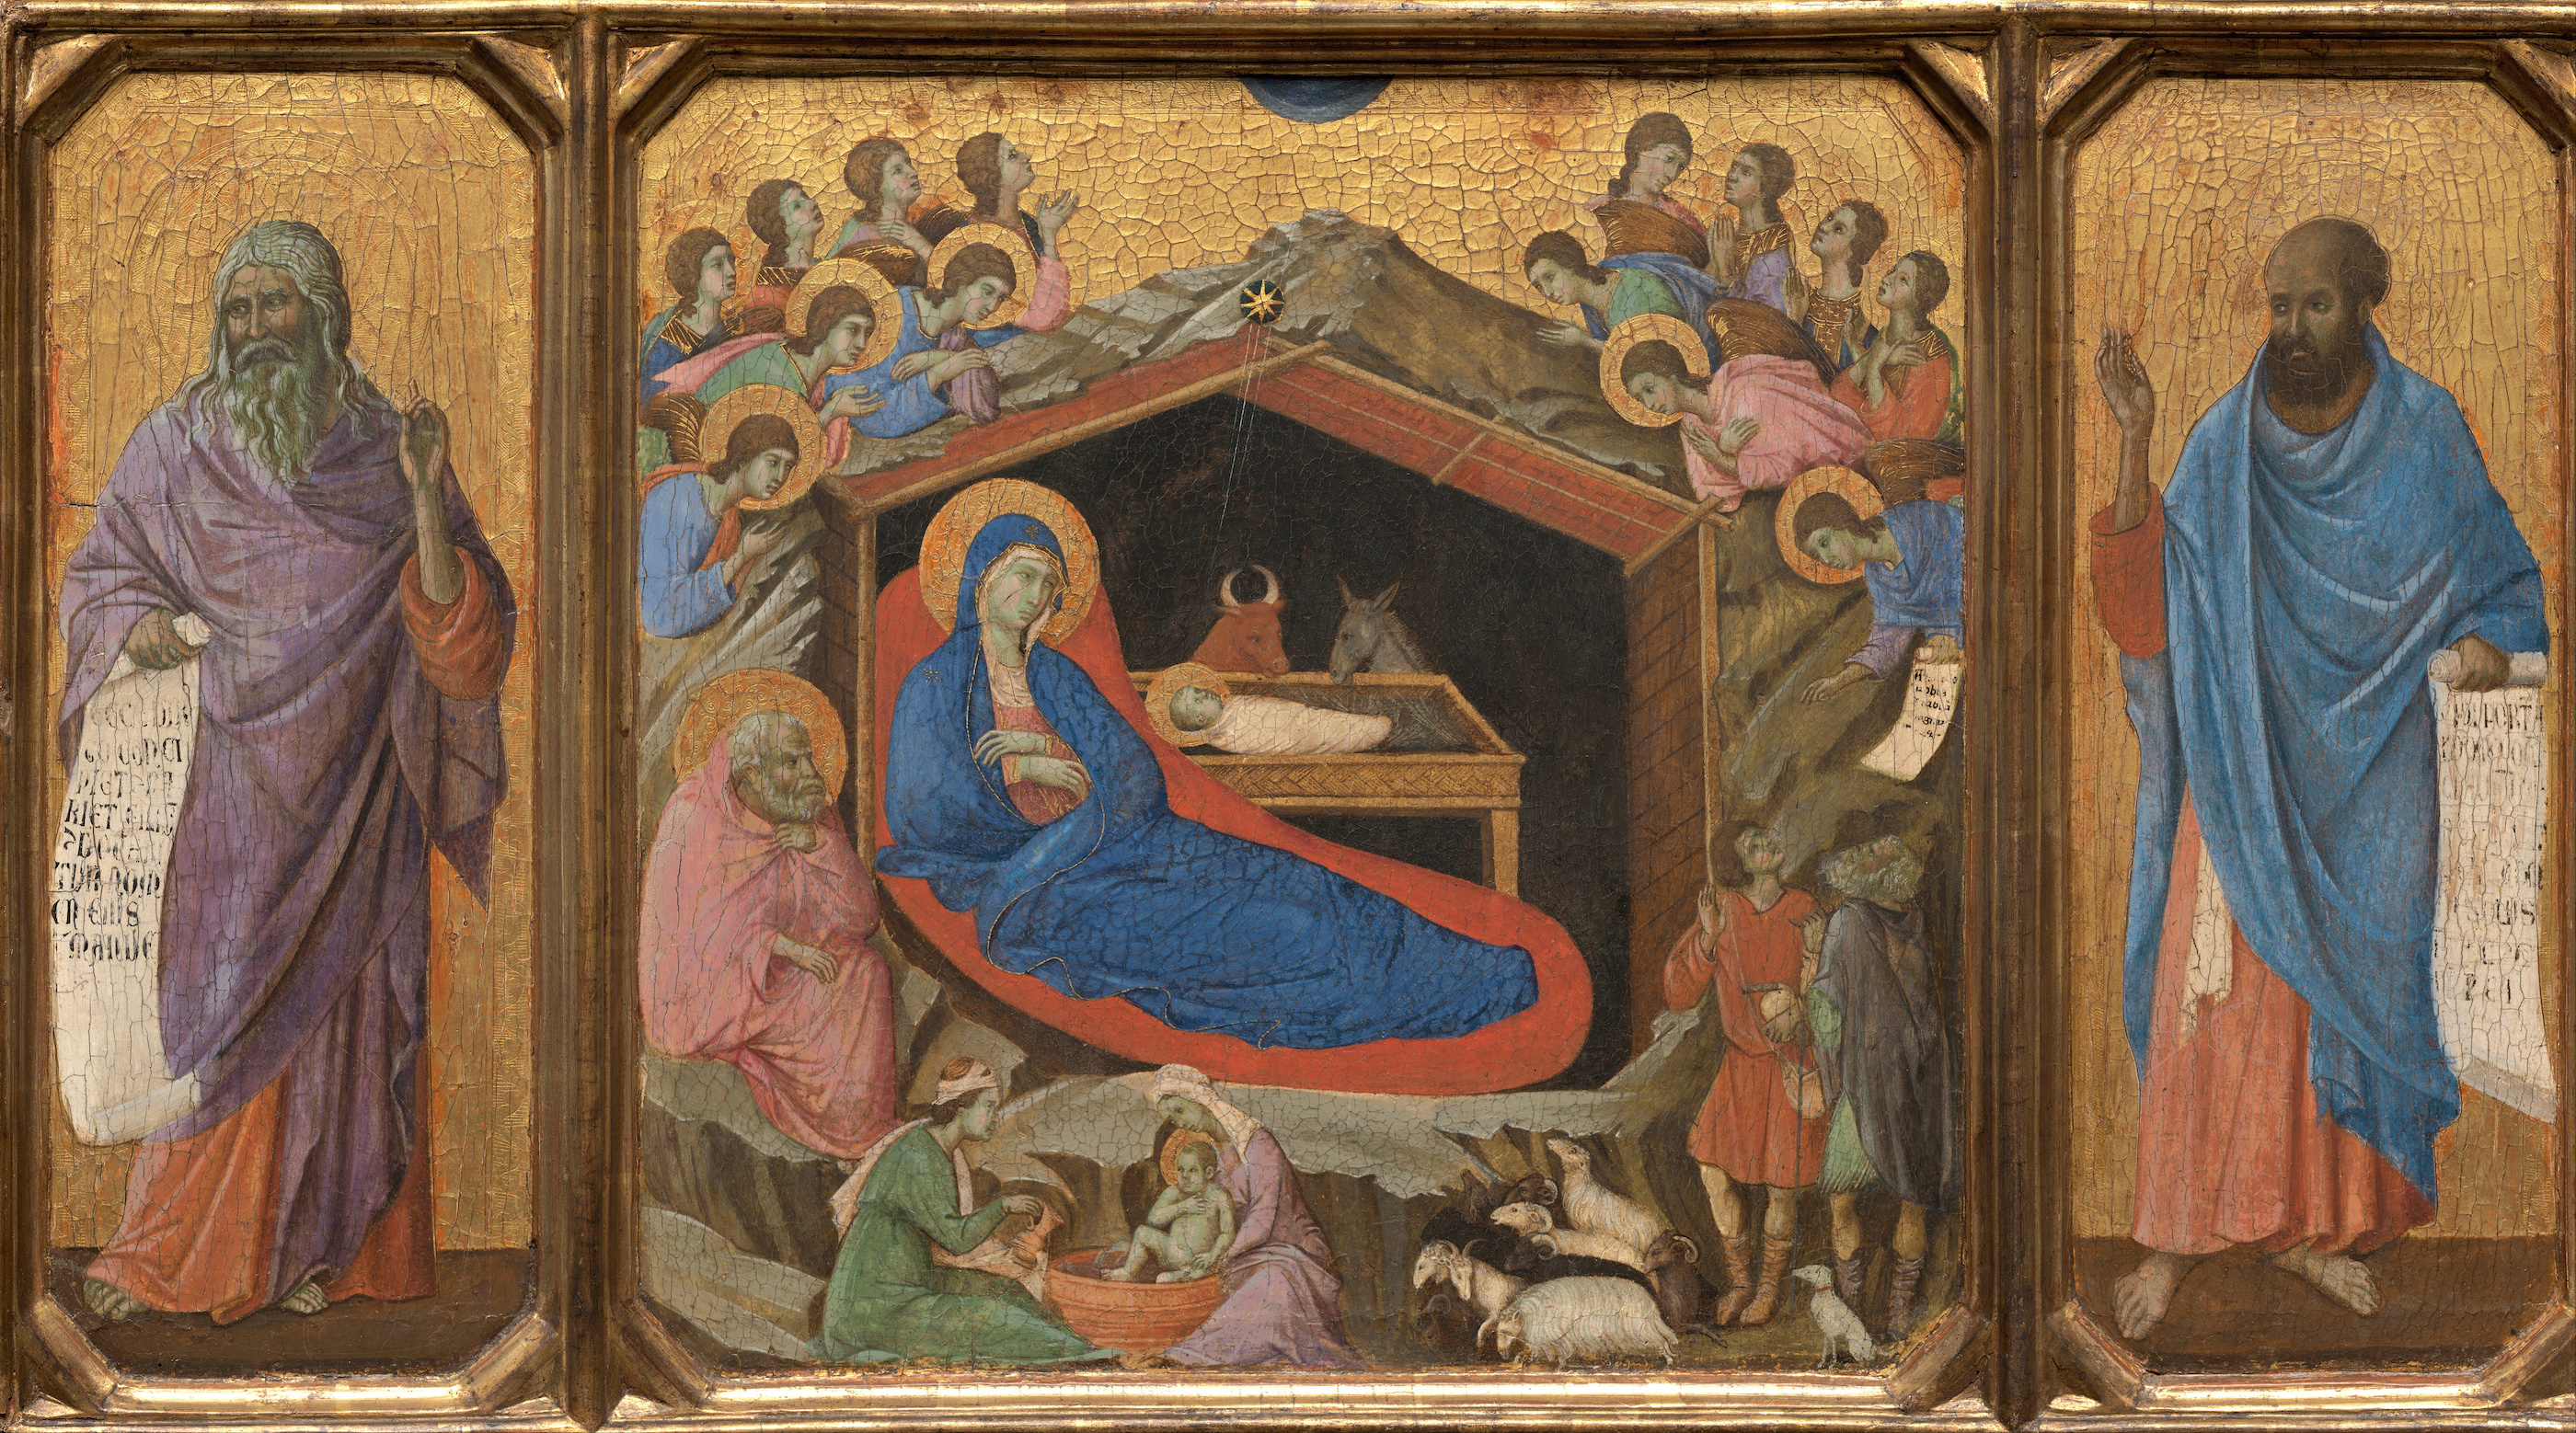 Jézus születése Ézsaiás és Ezékiel prófétákkal by Duccio di Buoninsegna - 1308 - 1311 - 870 x 480 cm 